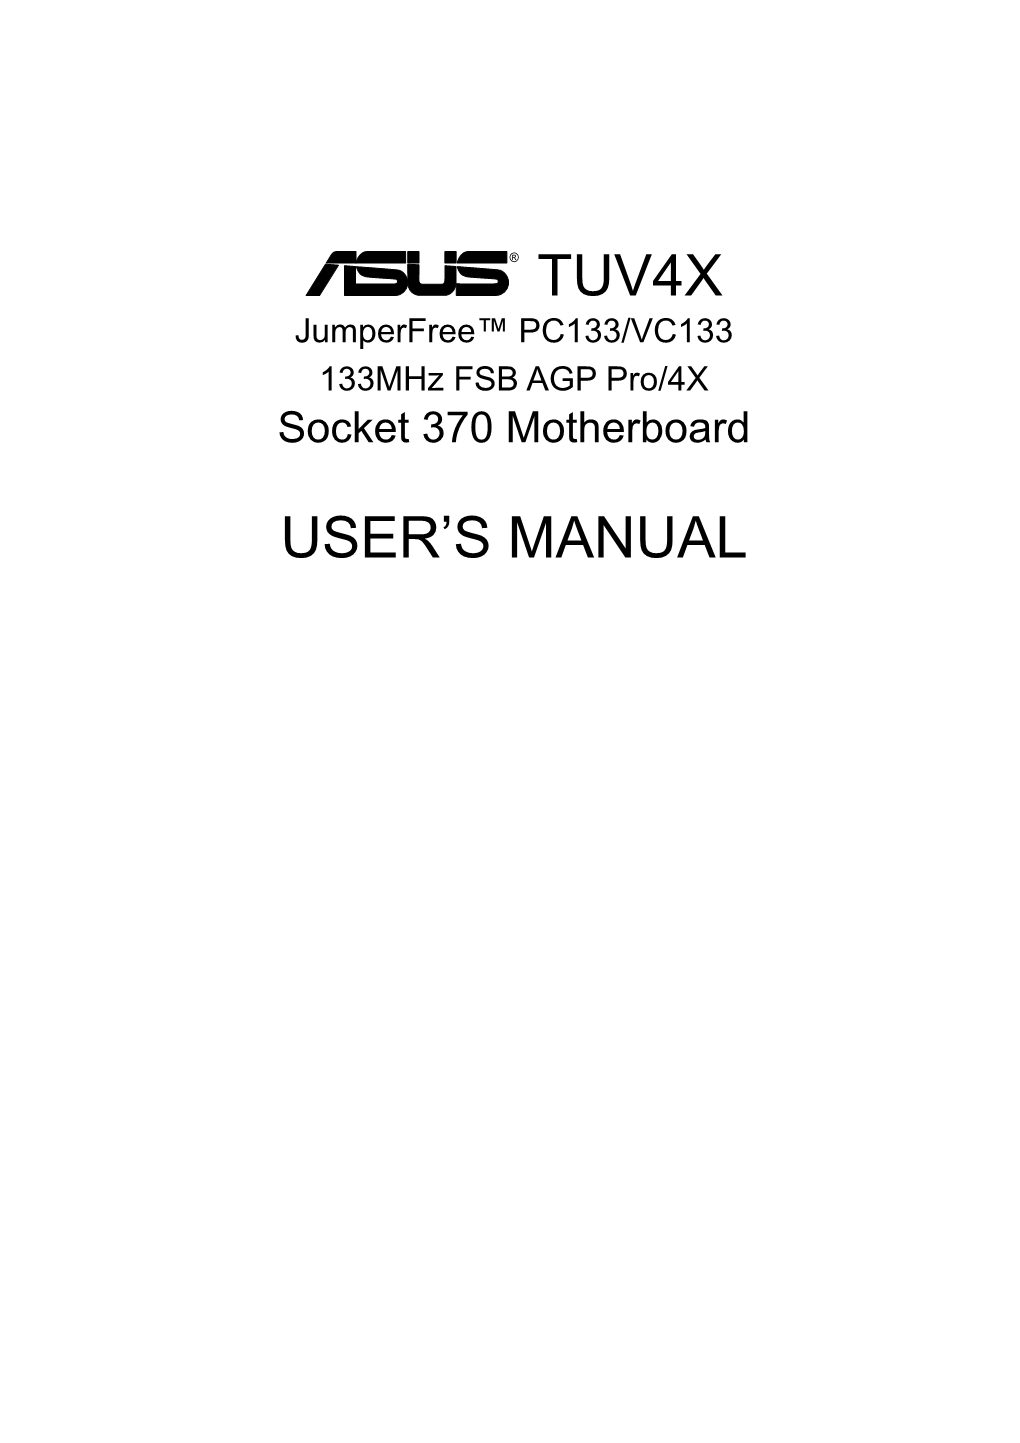 Tuv4x User's Manual